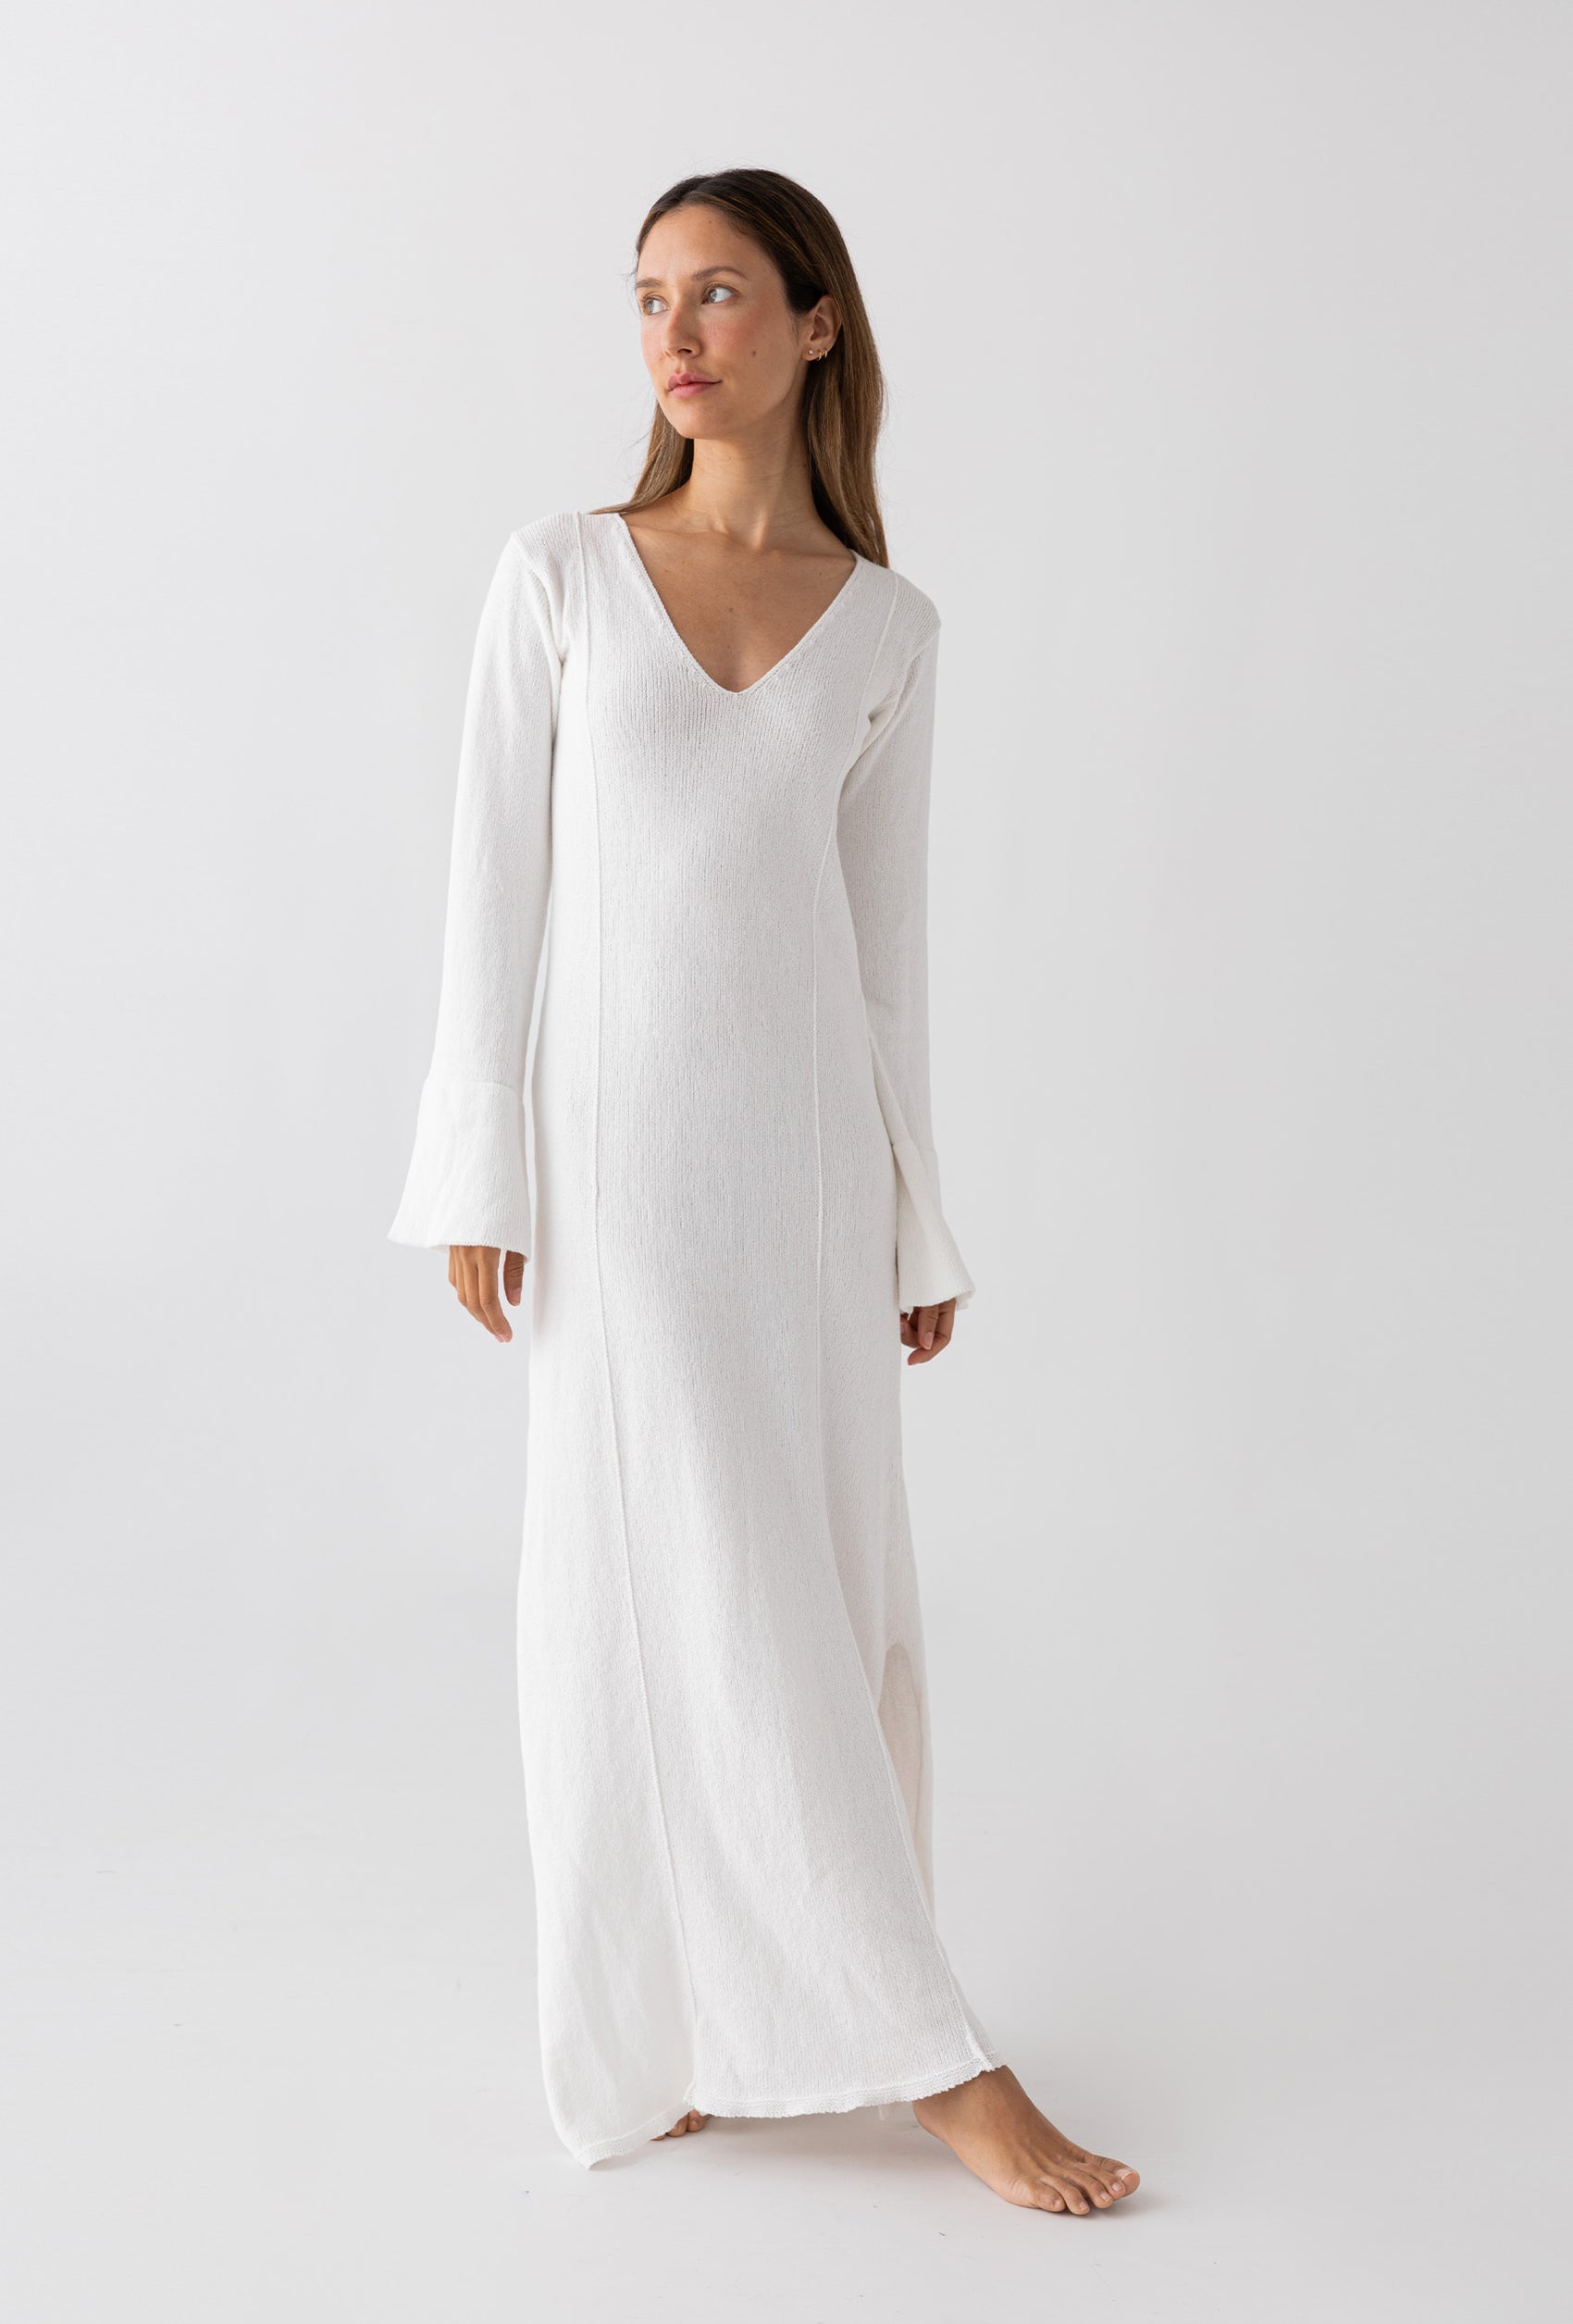 Tunic Dress: White